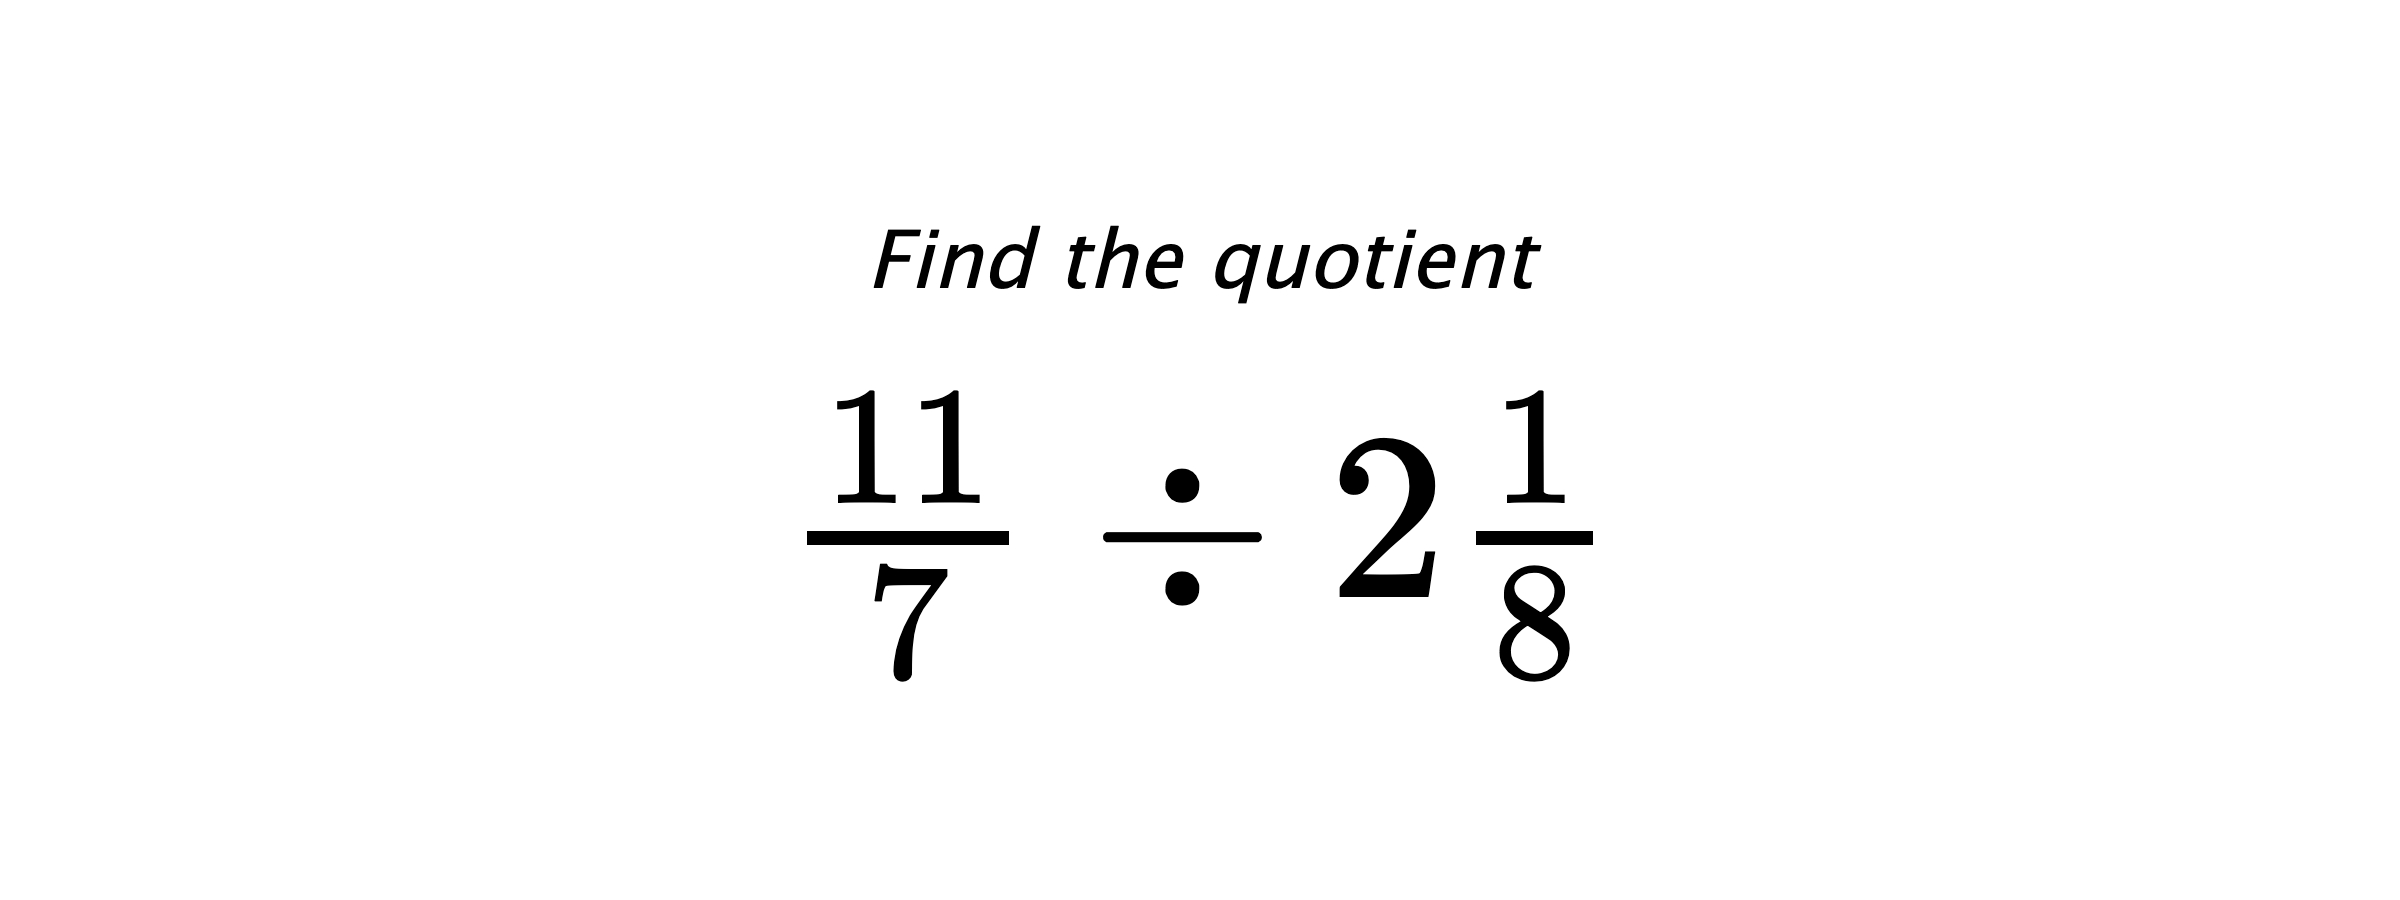 Find the quotient $ \frac{11}{7} \div 2\frac{1}{8} $